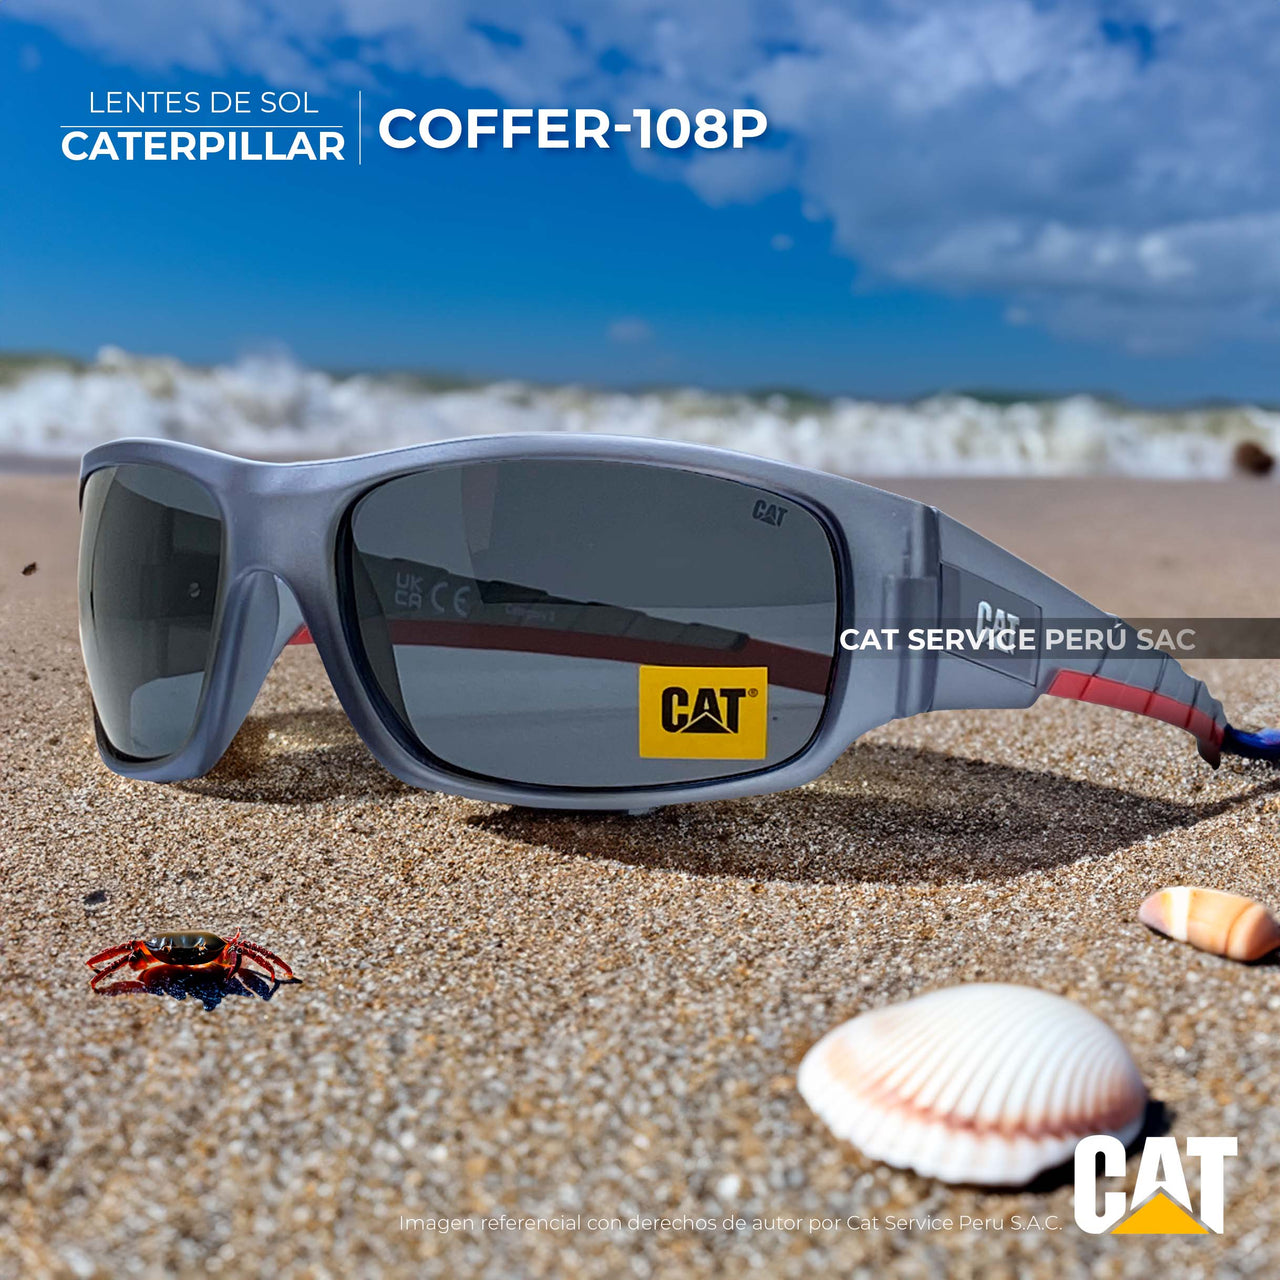 कैट सीटीएस कॉफ़र 108पी मैट ग्रे मून्स ध्रुवीकृत धूप का चश्मा 